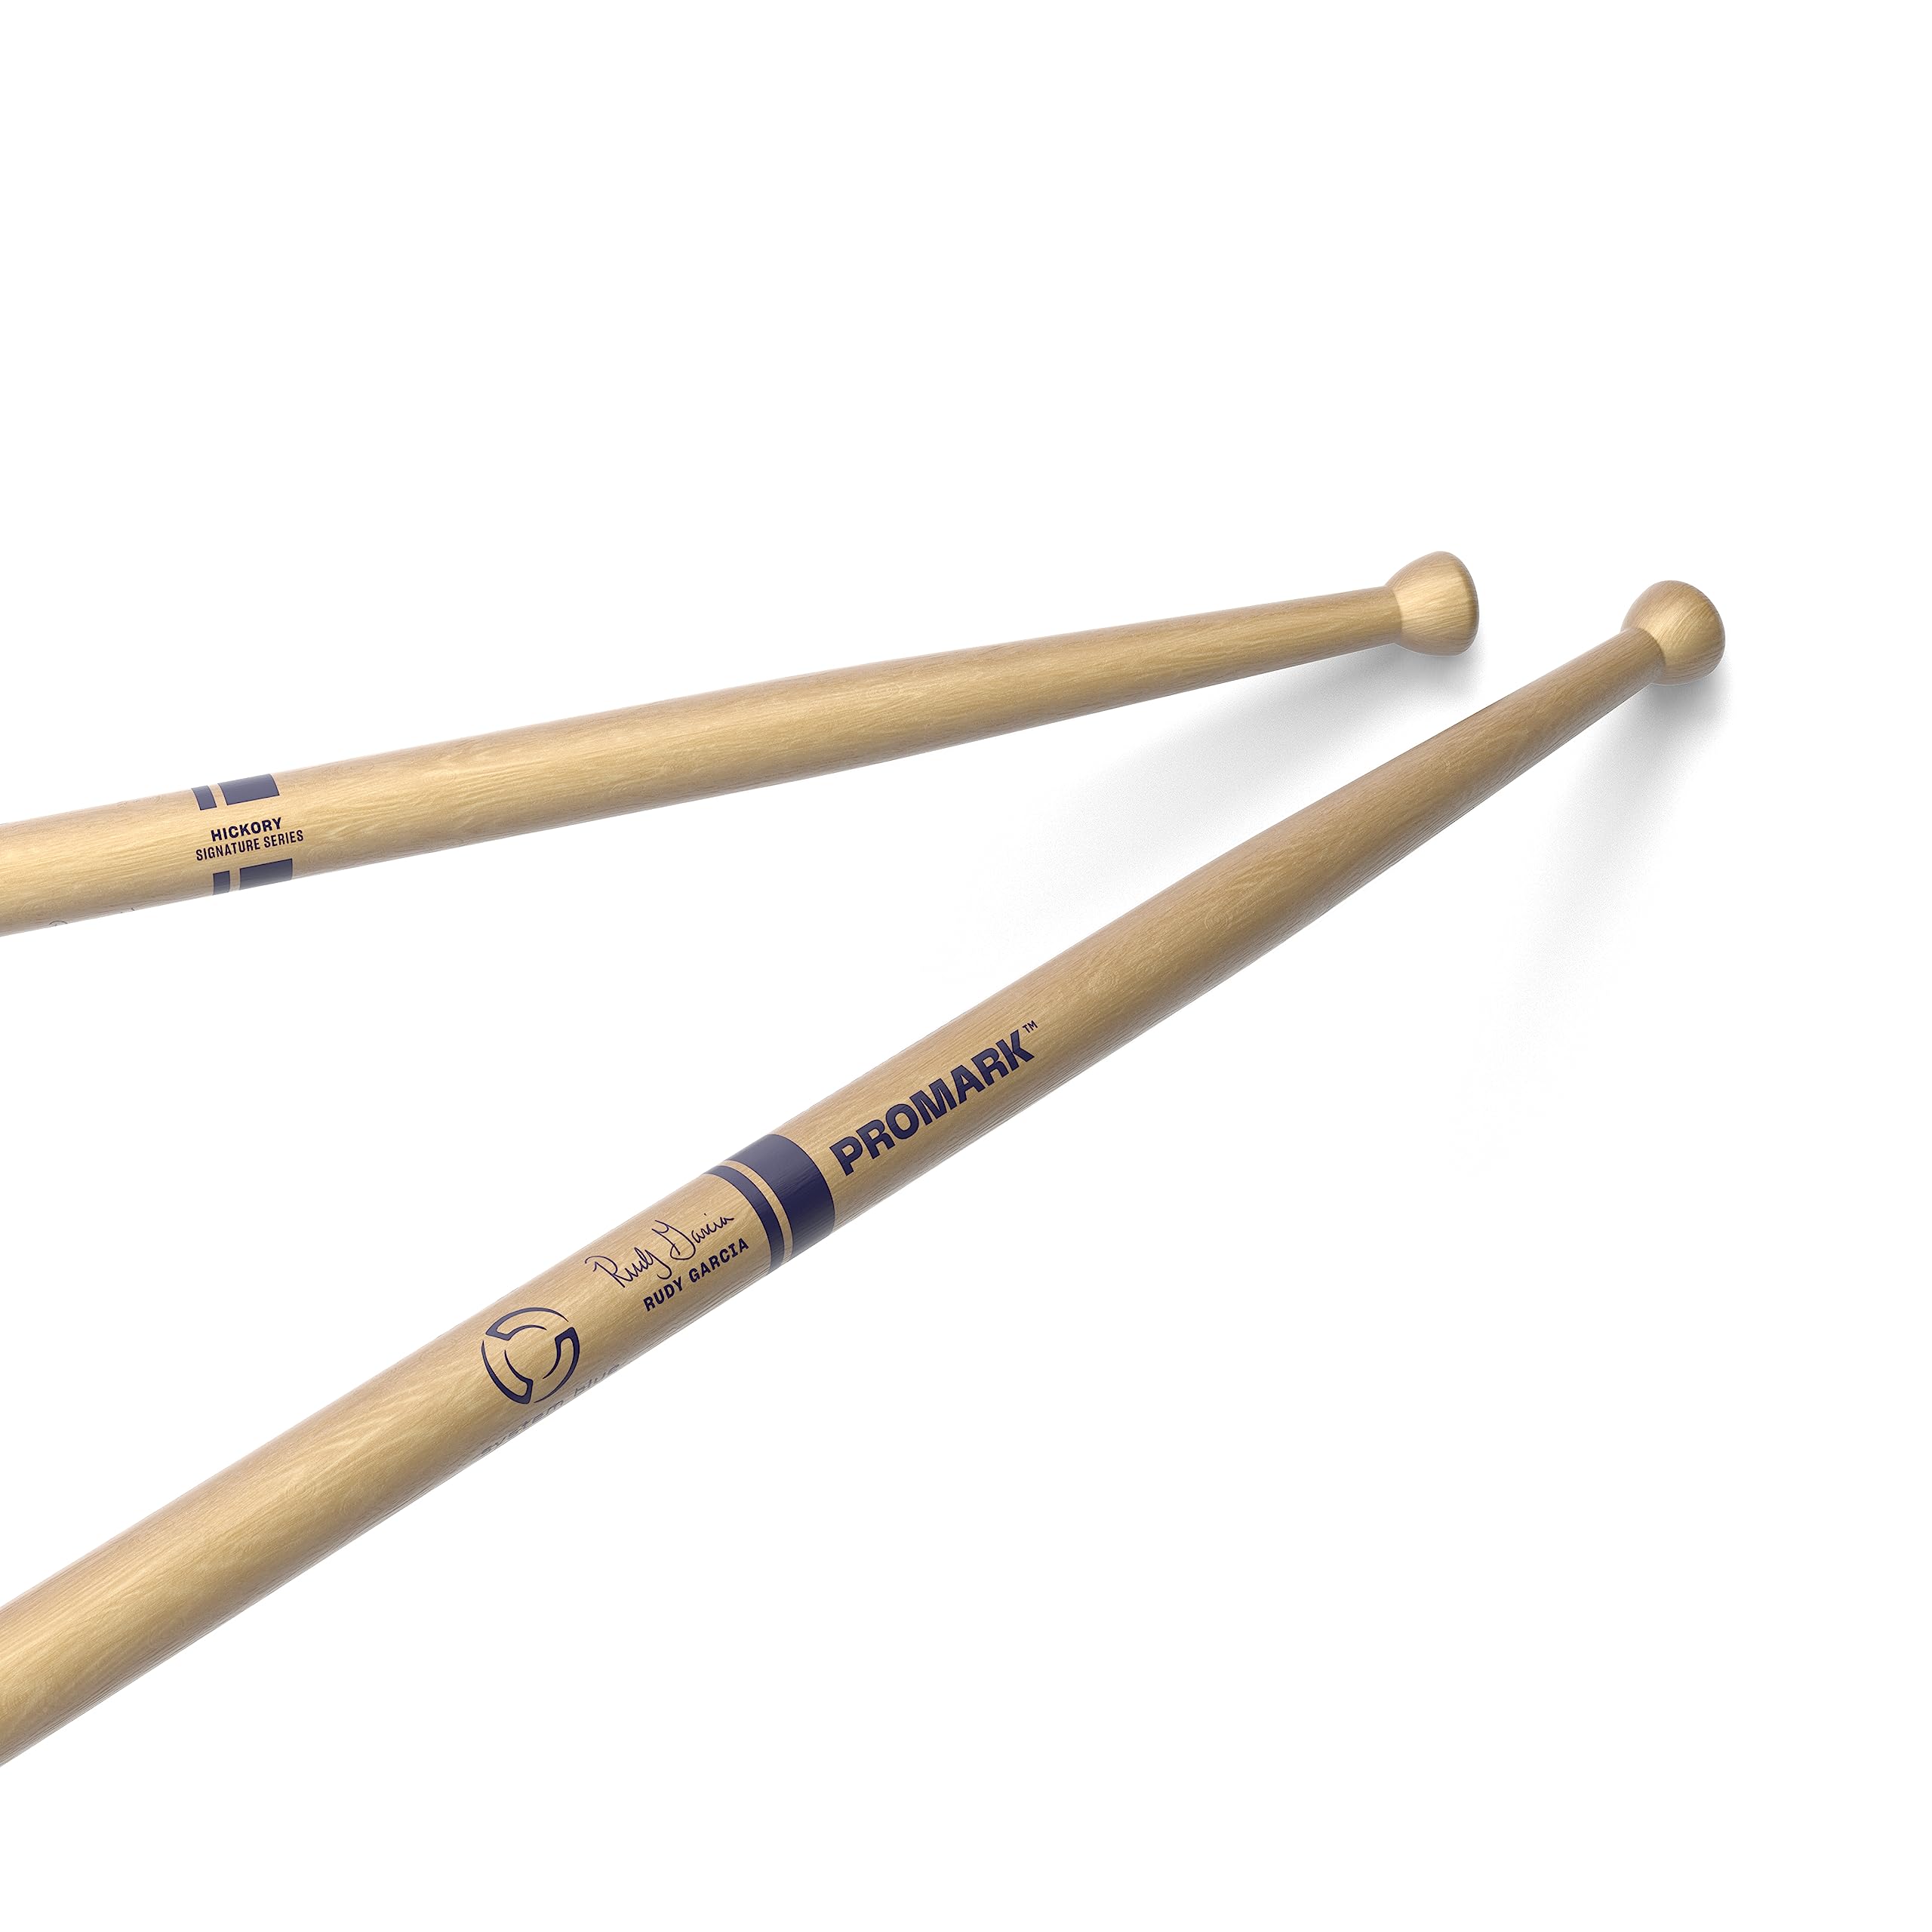 ProMark Drumsticks - Sean Vega TS8 System Blue Tenor Drumsticks - Drum Sticks Set - Nylon Tip - Hickory Drumsticks - Gleichbleibendes Gewicht und Tonhöhe - 1 Paar